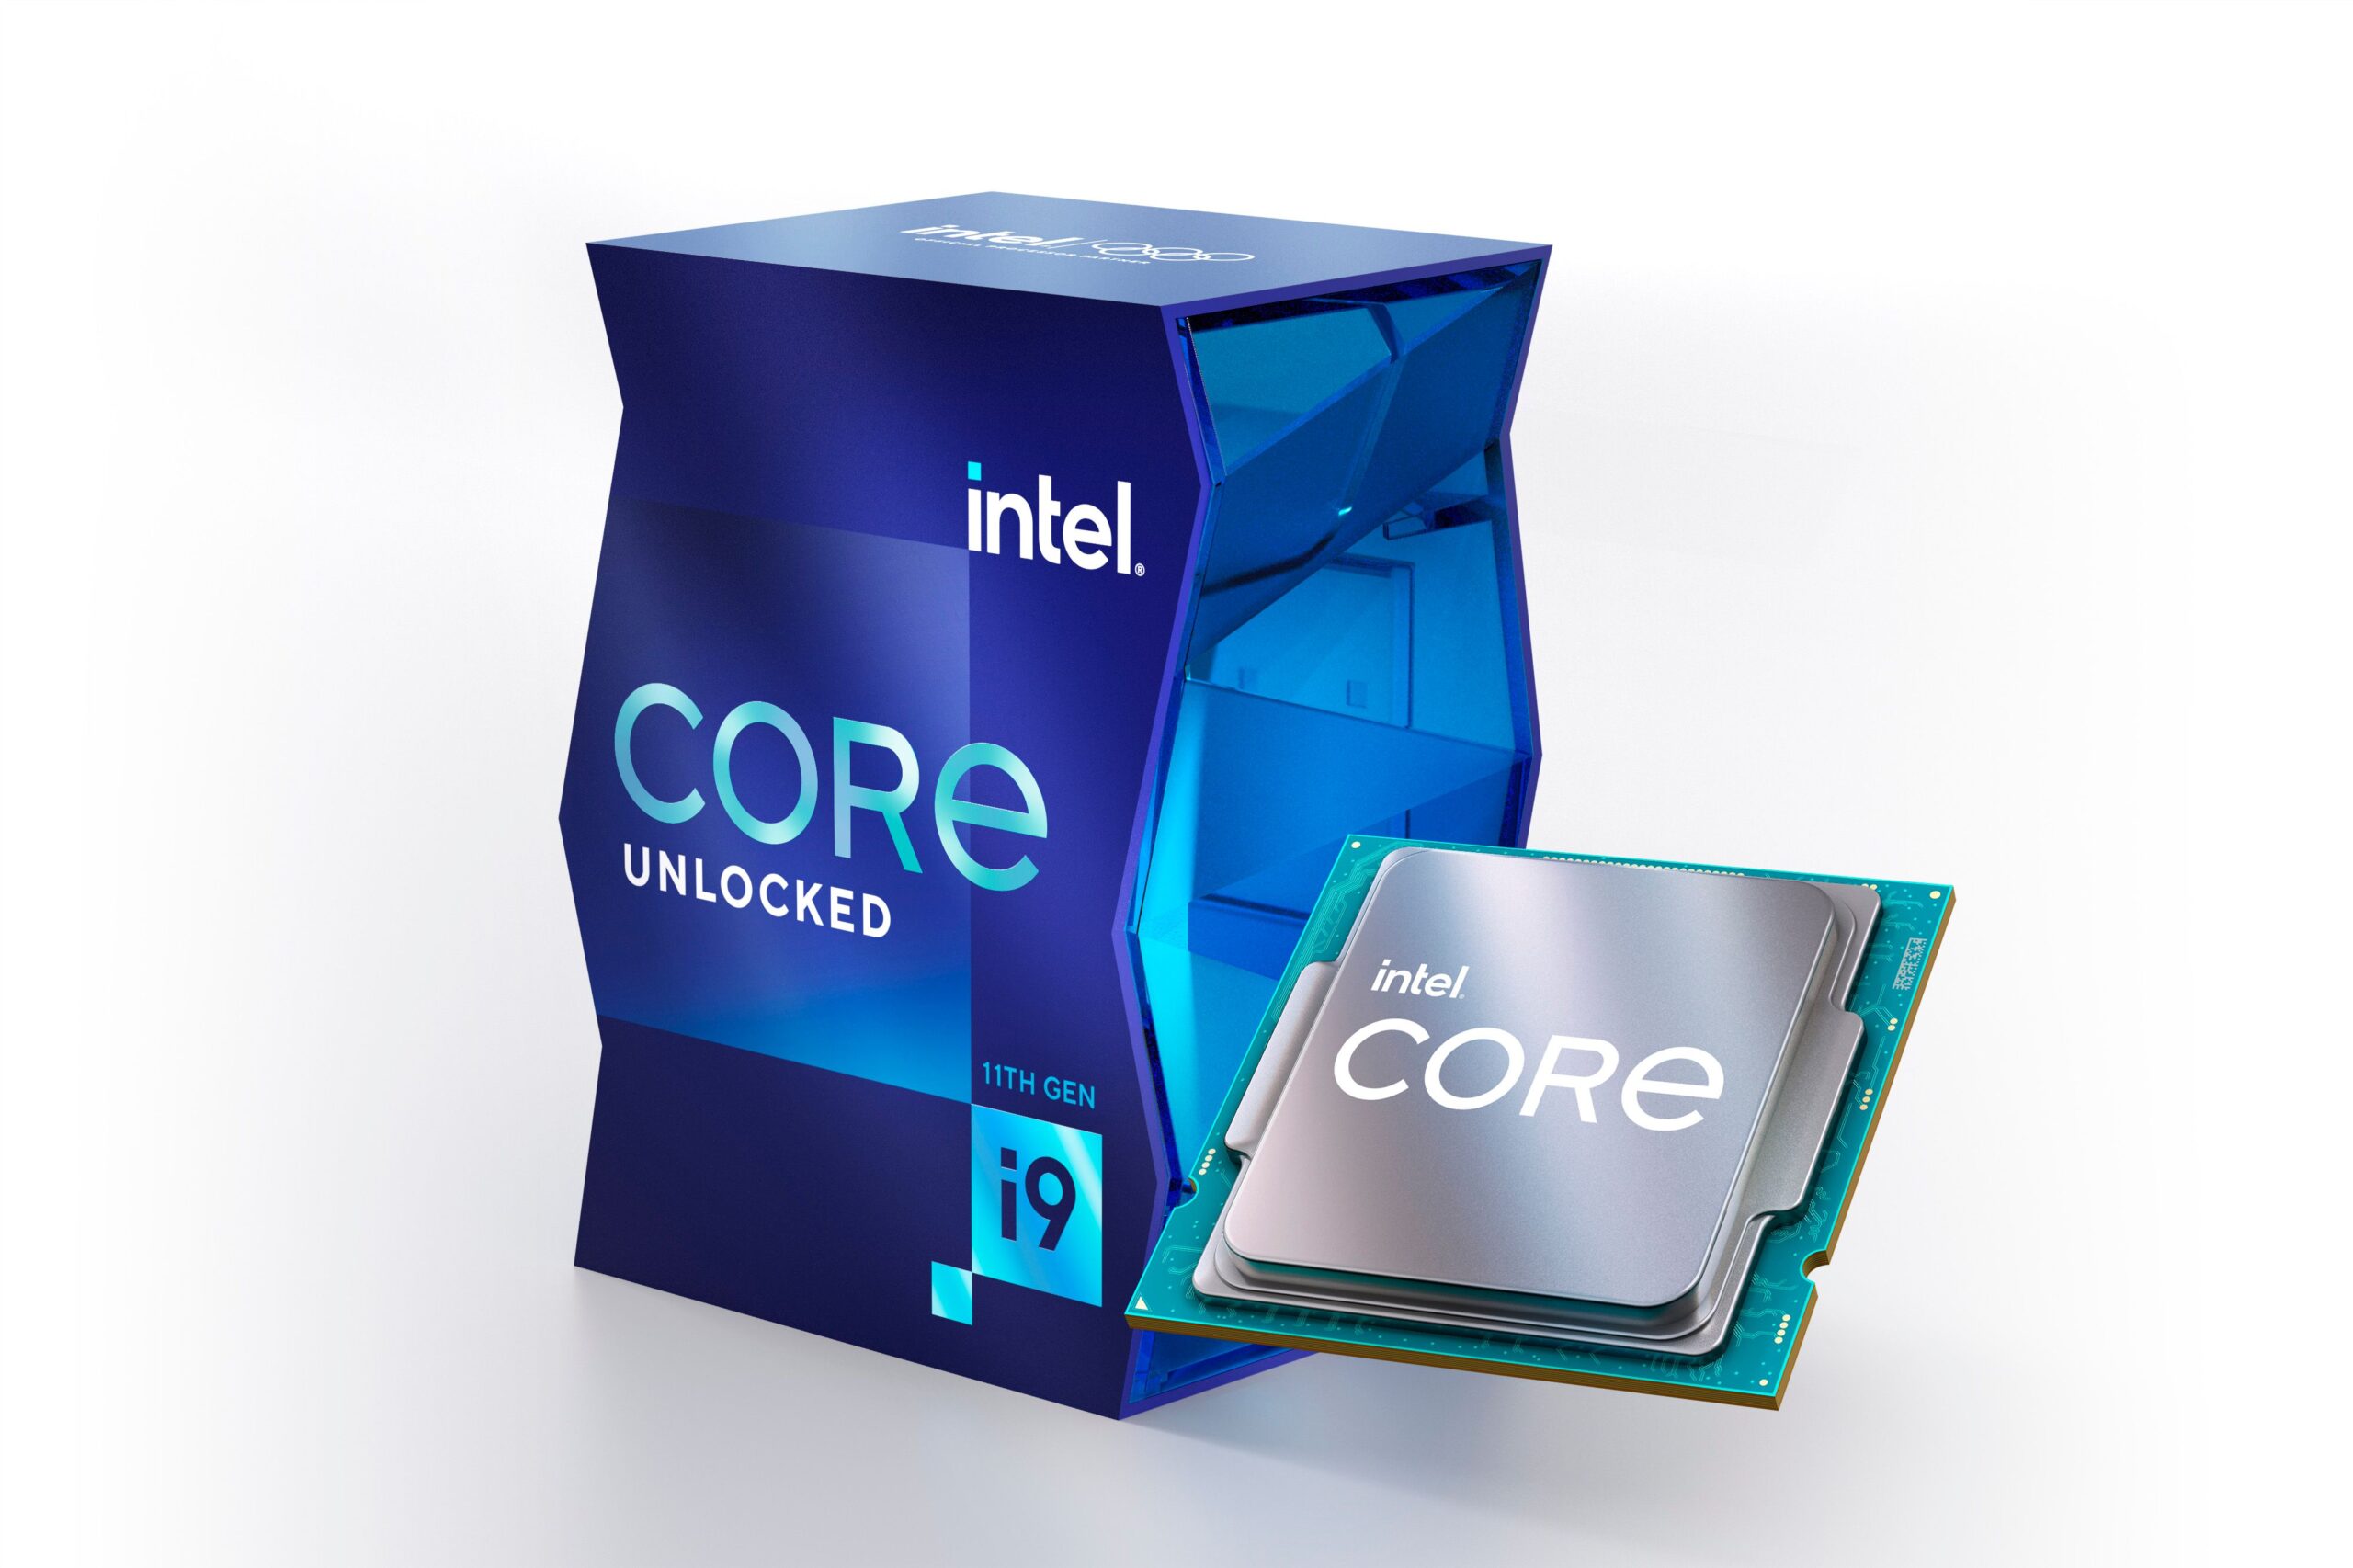 Los procesadores de escritorio Intel Core serie S de 11a Generación lideraros por el procesador insignia Intel Core i9-11900K